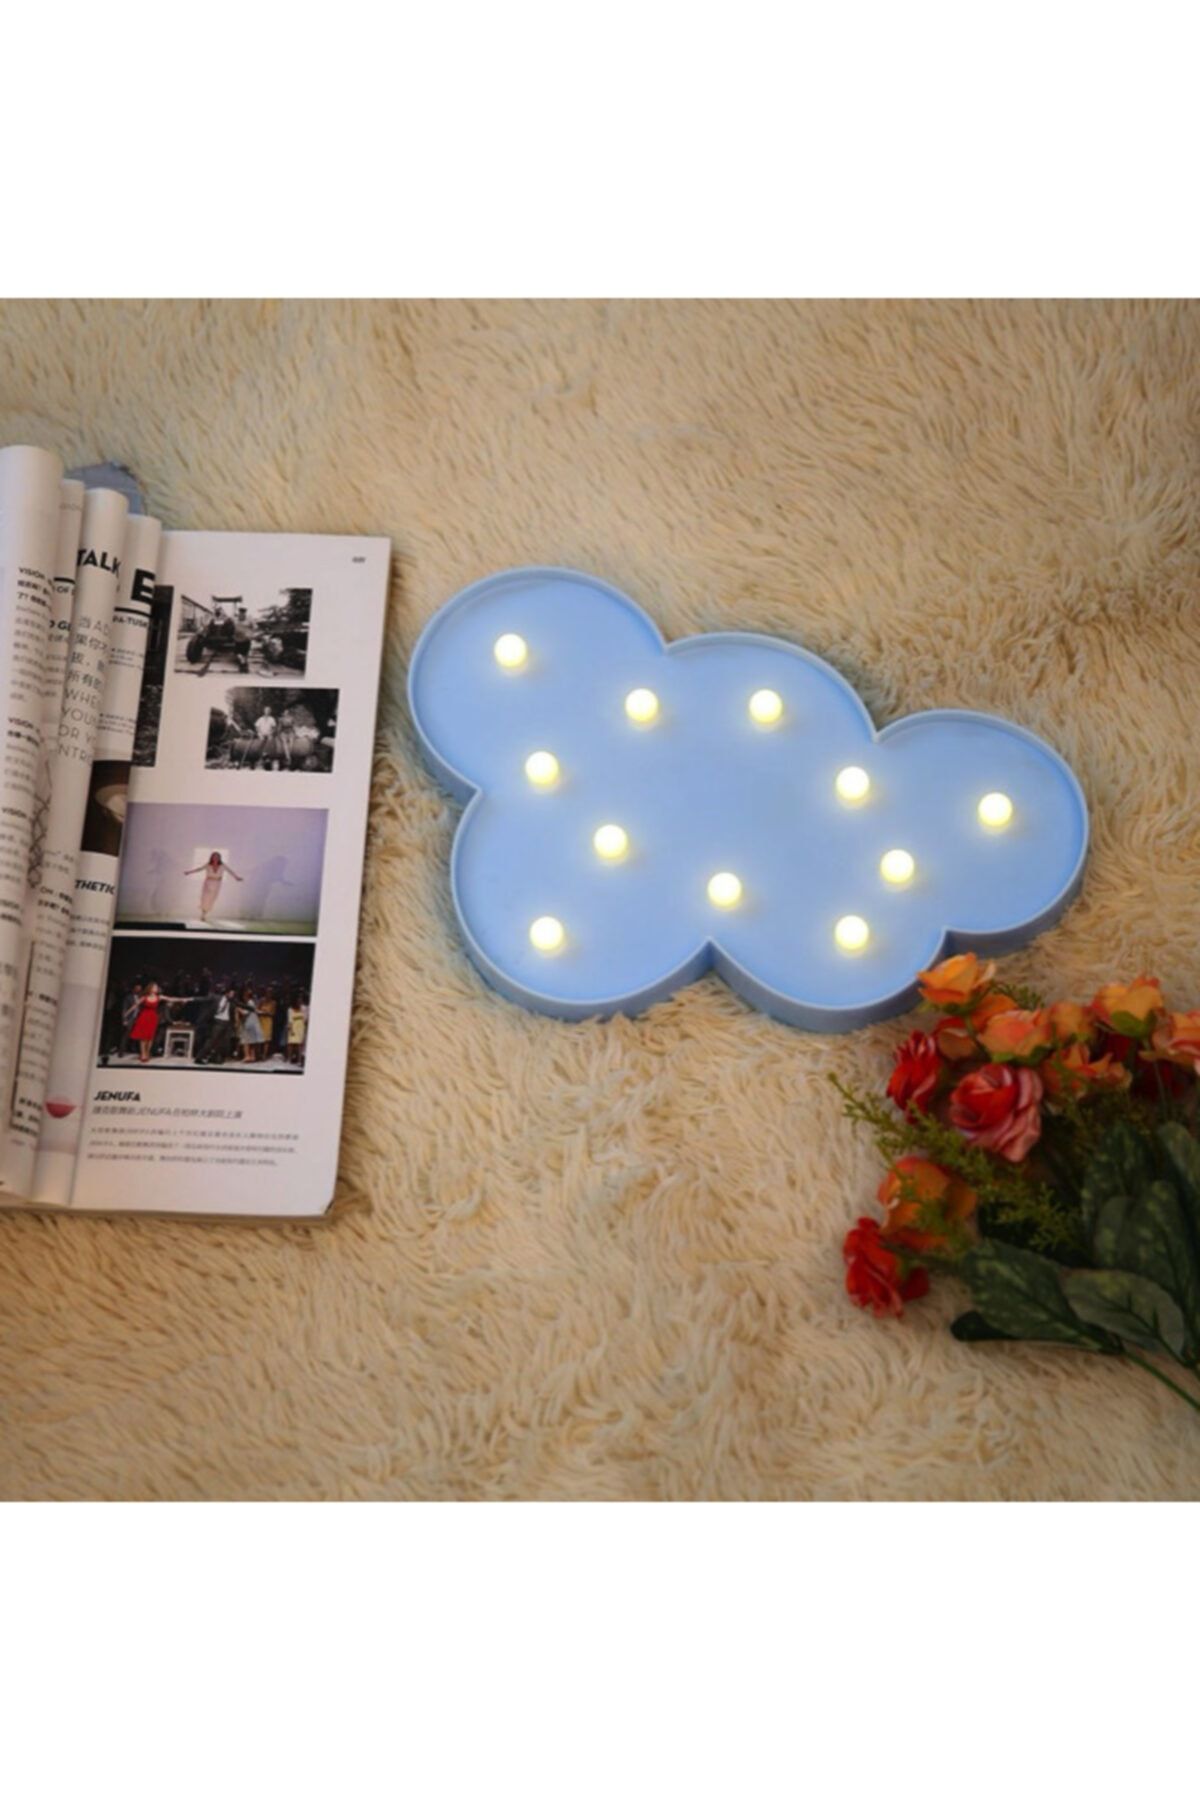 ErdemShop 3d Led Işıklı Dekoratif Mavi Bulut Gece Lambası Çocuk Bebek Odası